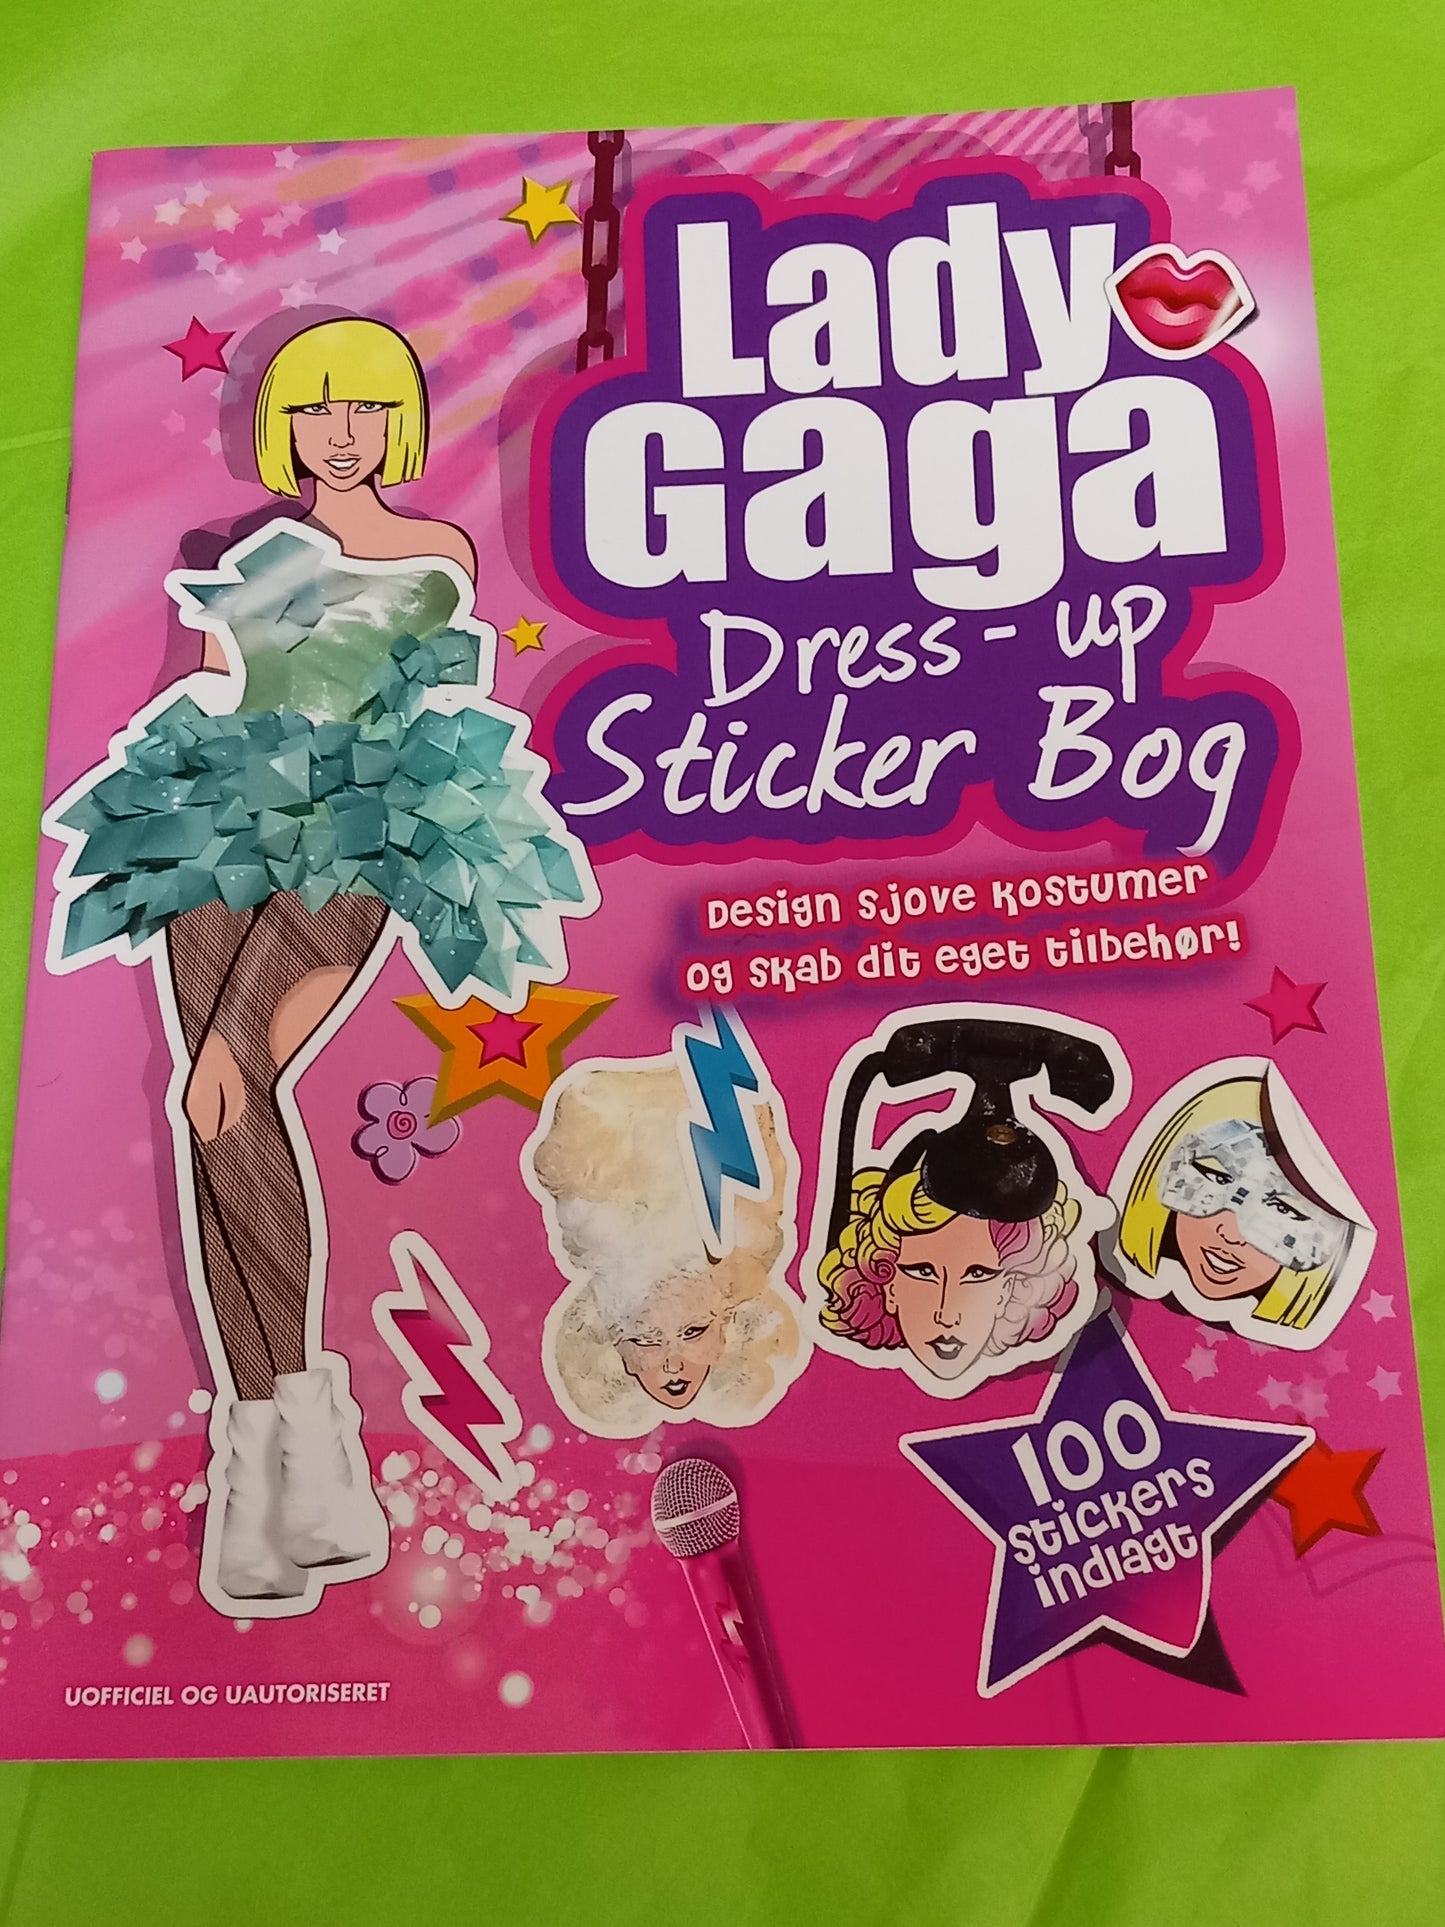 Lady gaga dress-up stickers bog